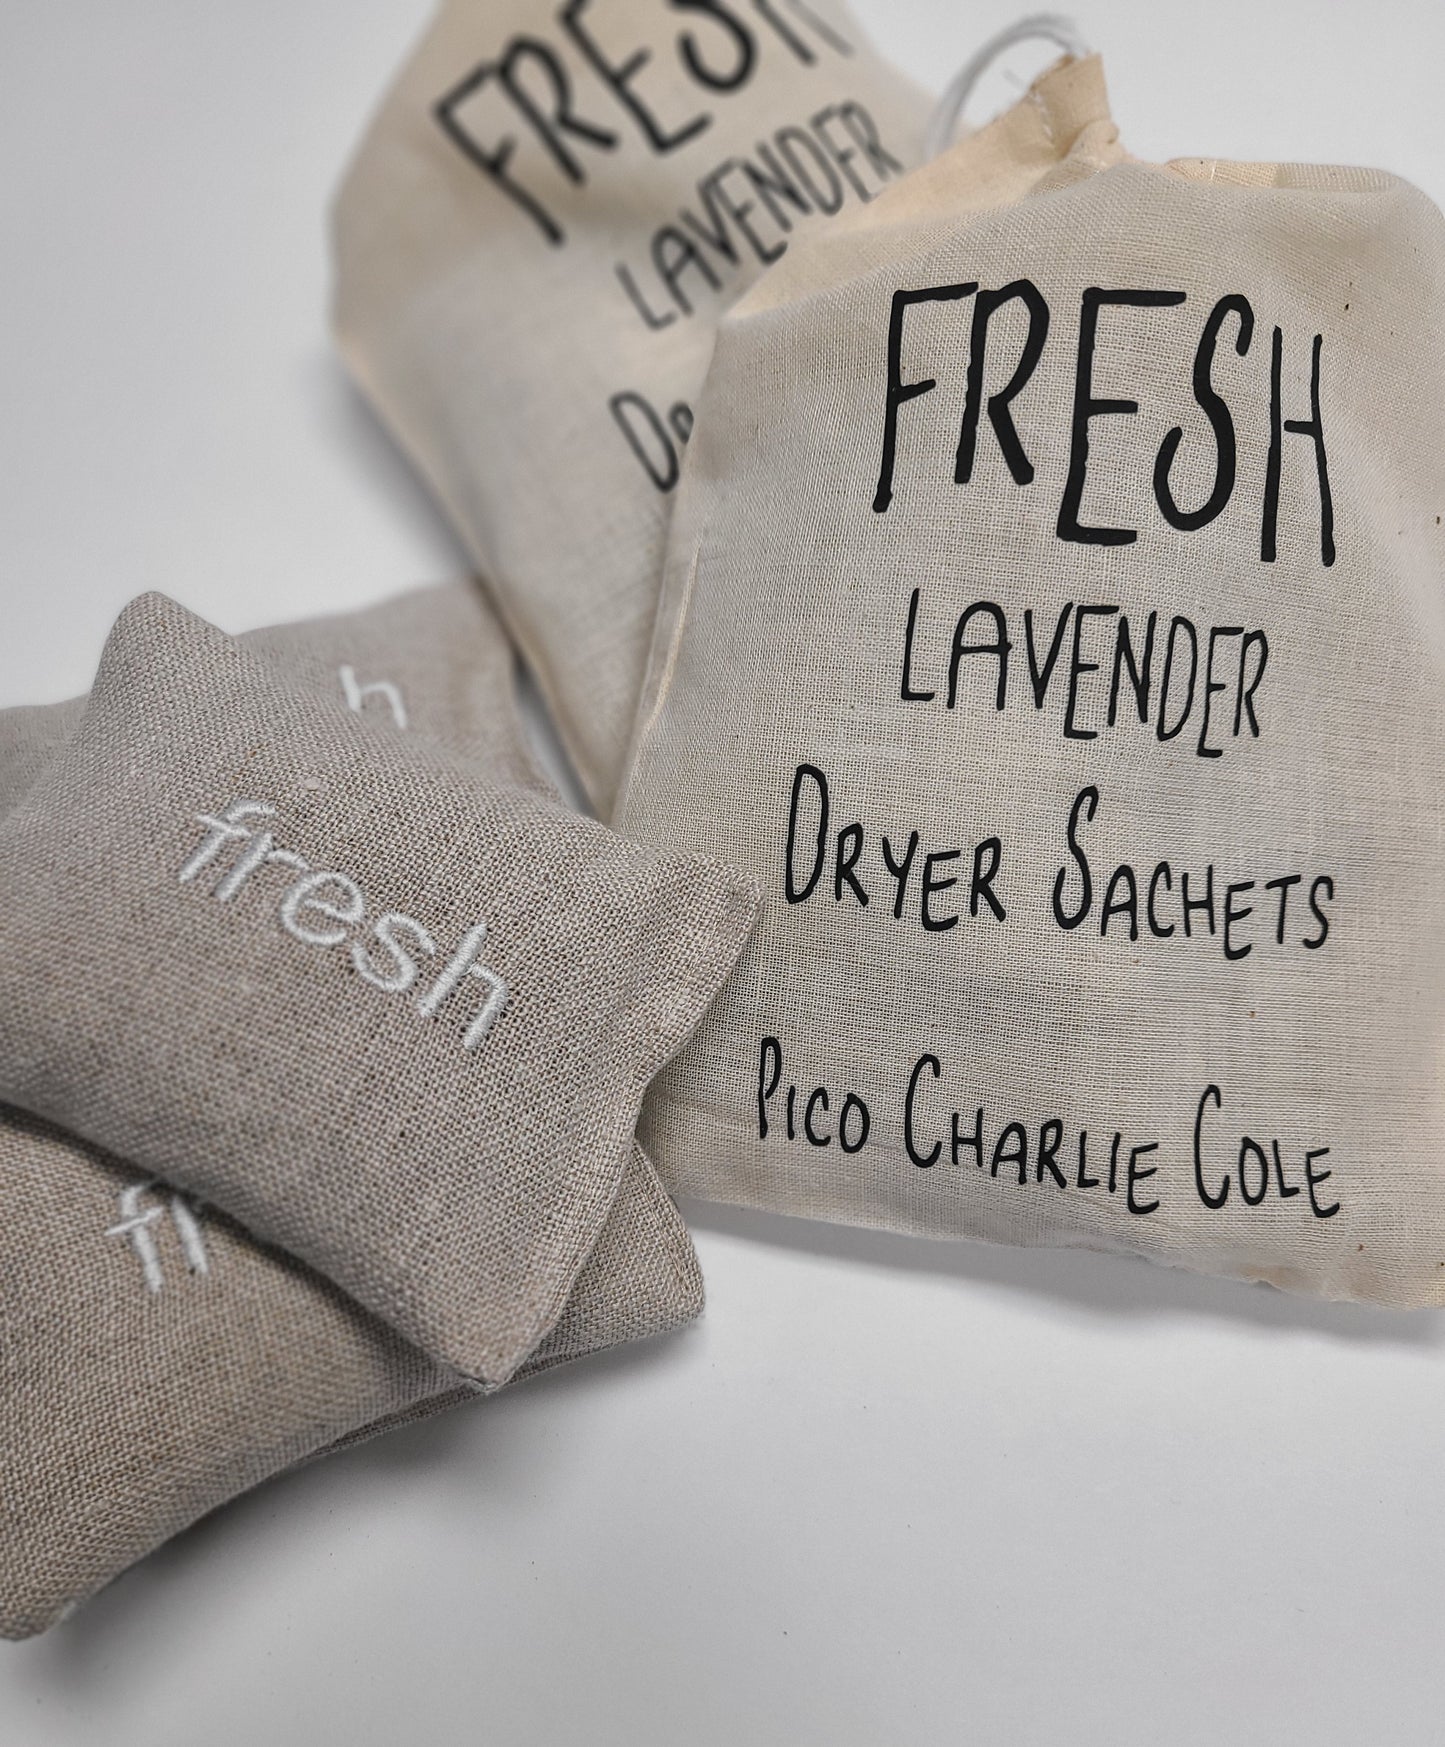 Bag of Fresh dryer sachets